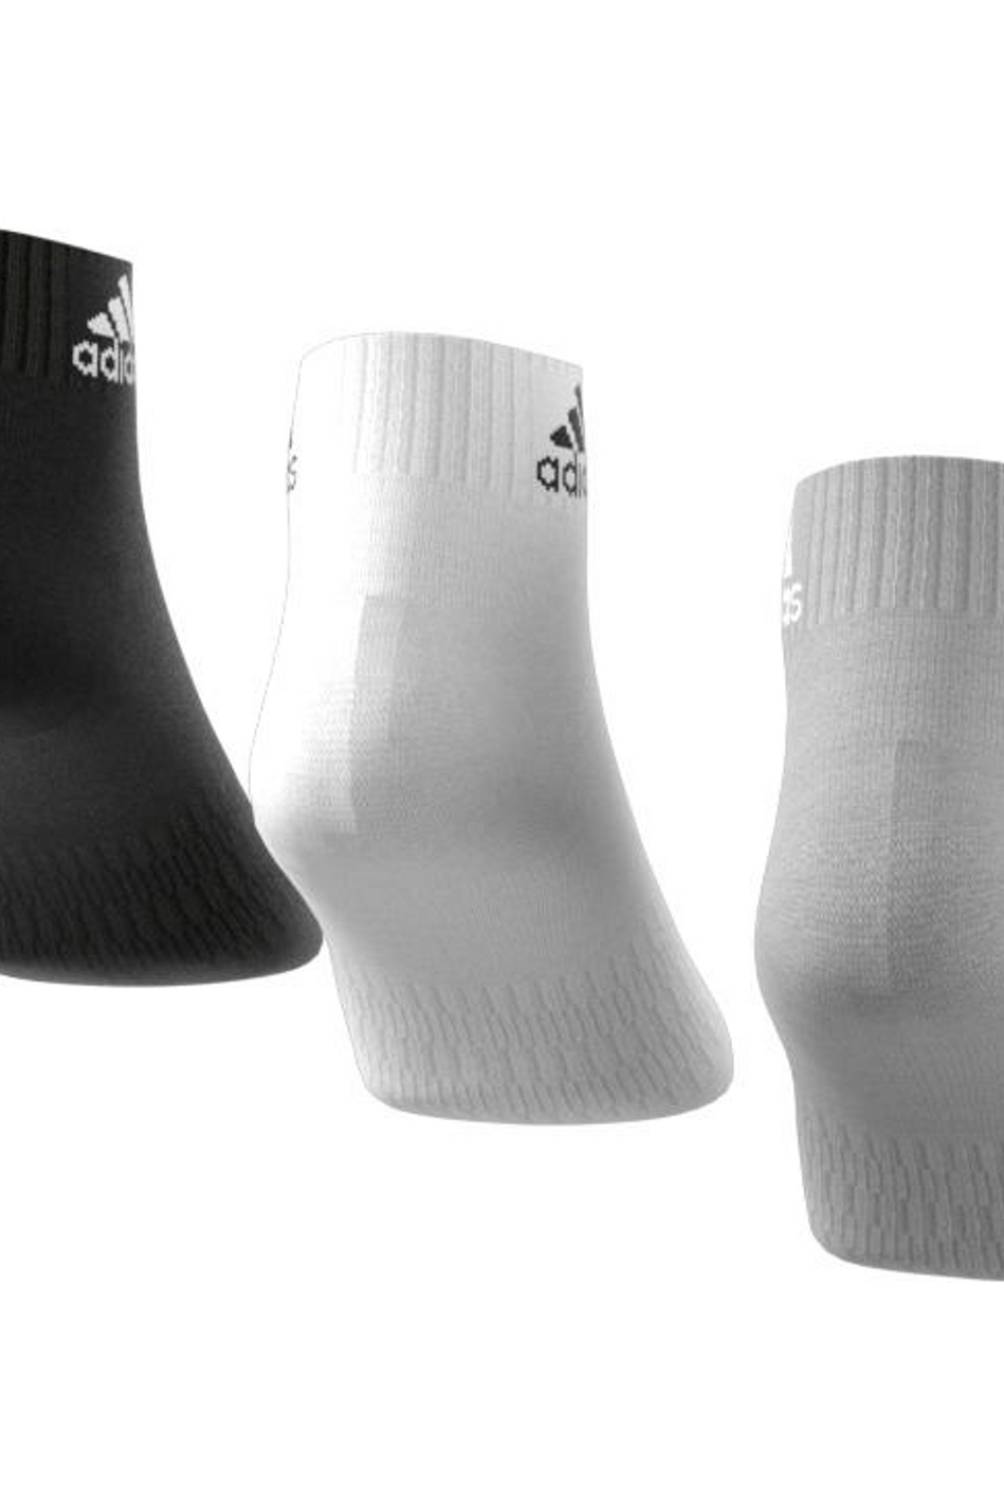 Adidas - Adidas Pack De 3 Calcetines Cortos Deportivos